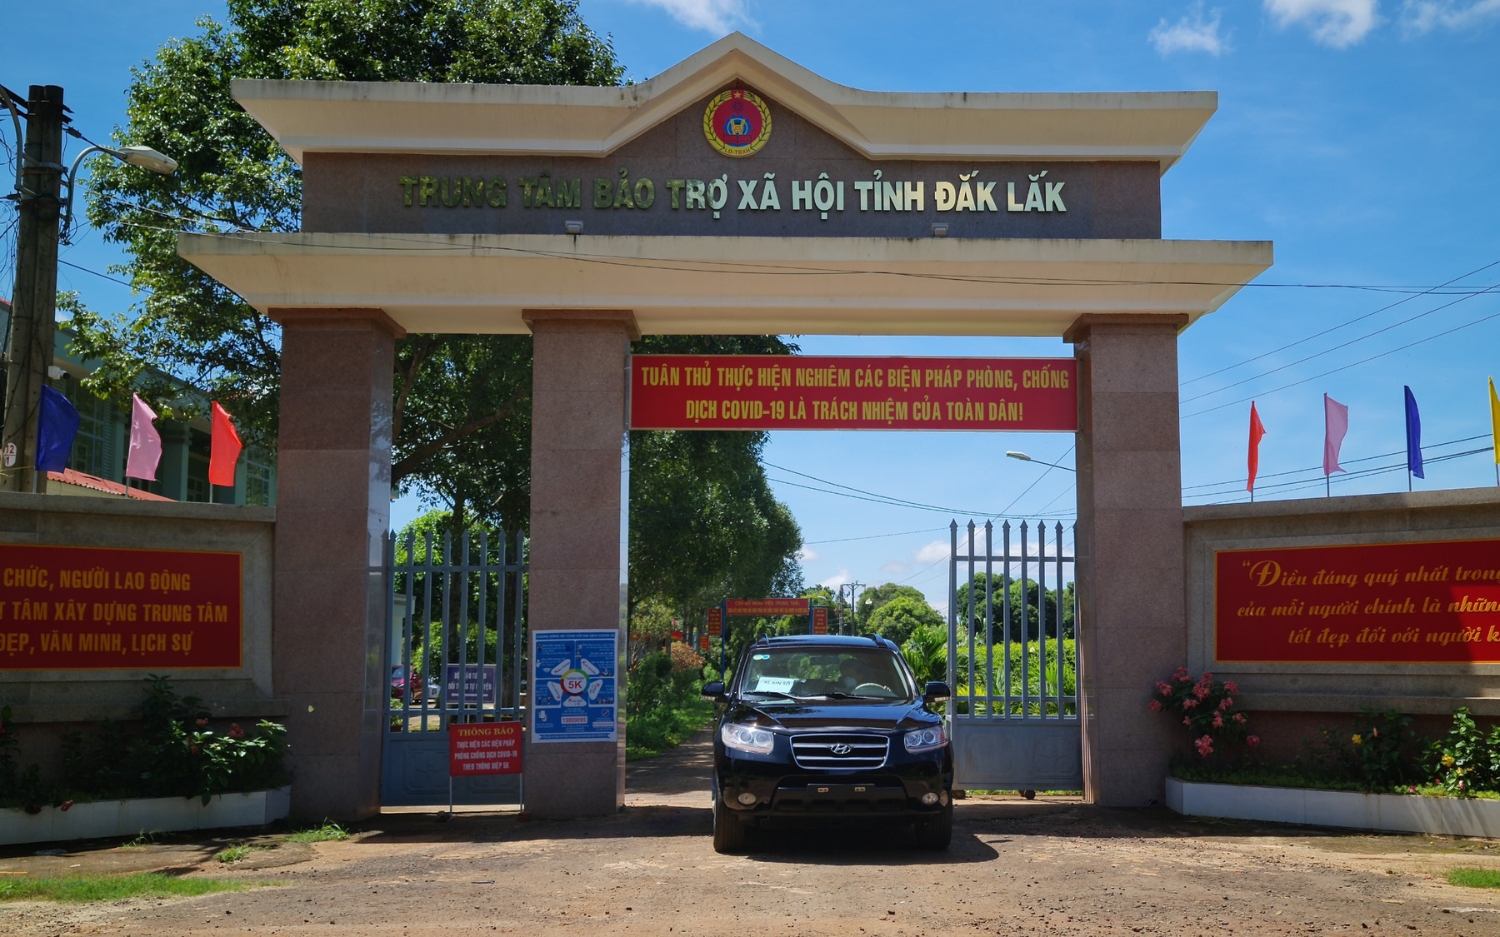 Môi trường xanh sạch đẹp, an toàn trong mùa Covid-19 tại Trung tâm Bảo trợ xã hội tỉnh Đắk Lắk